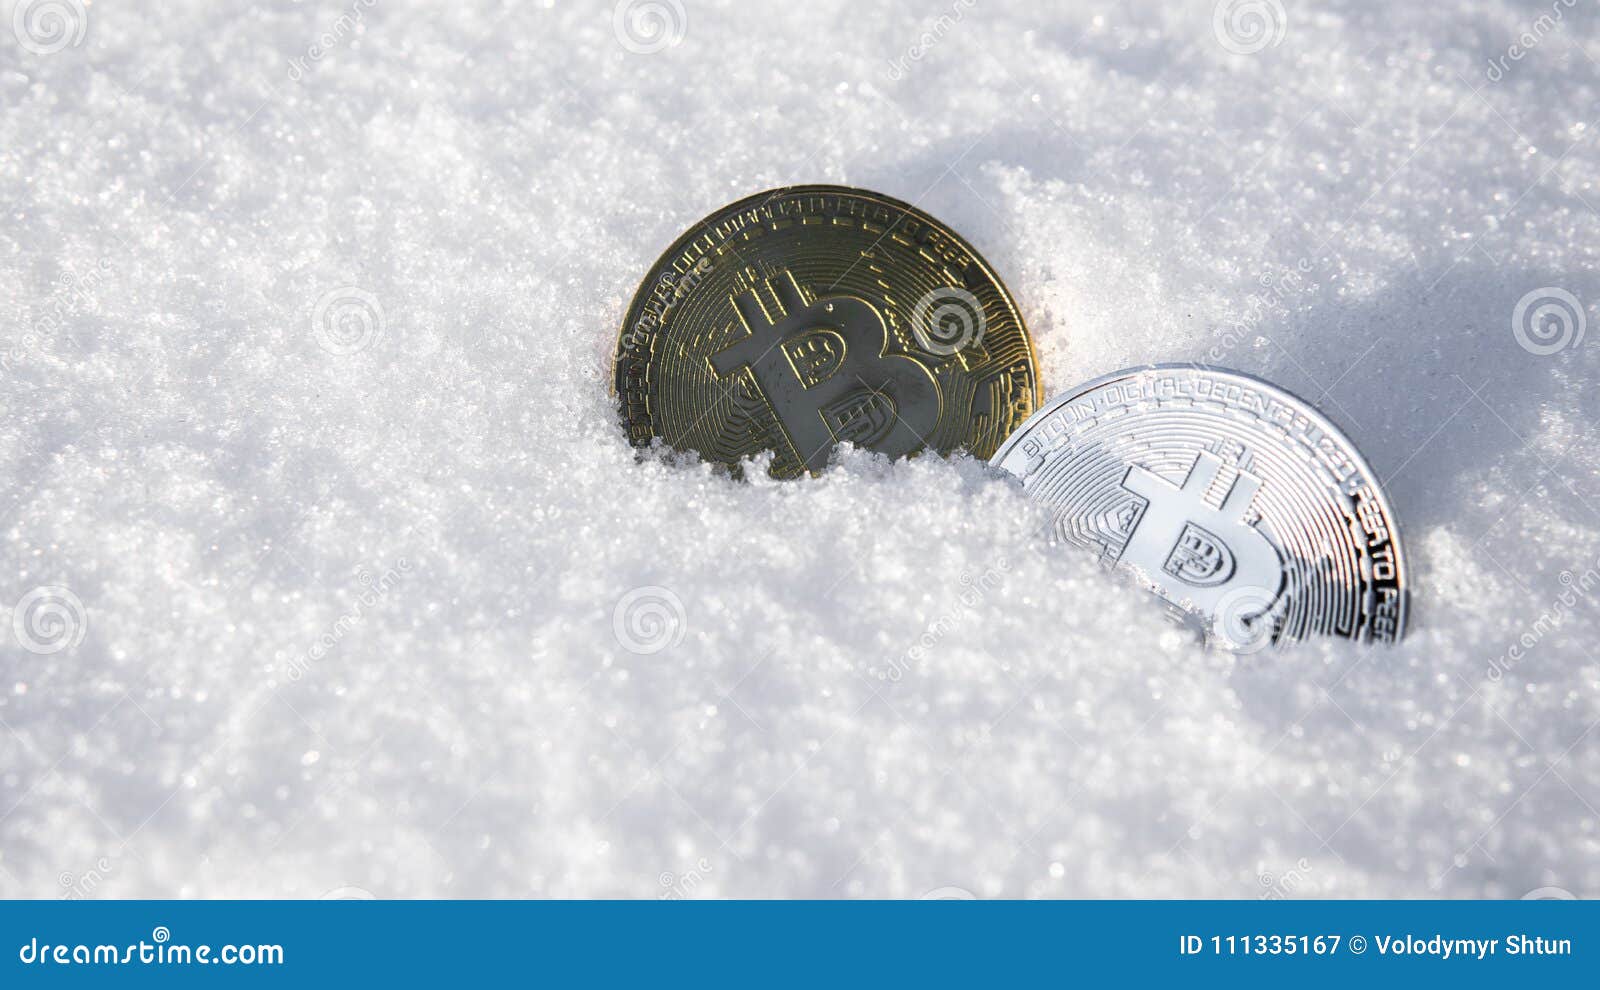 bitcoin trading frozen